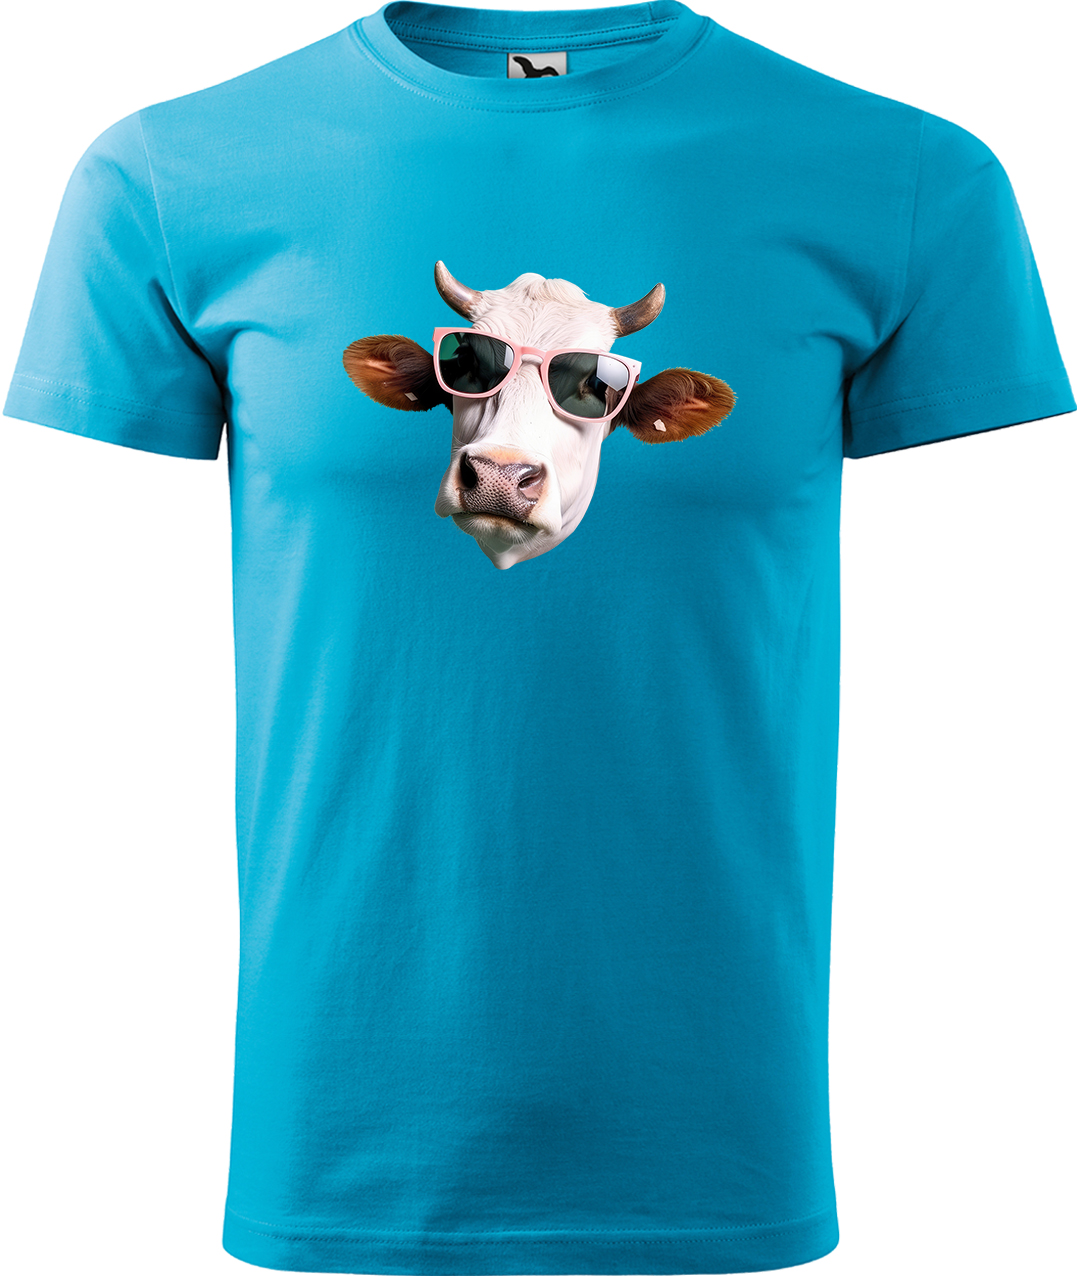 Pánské tričko s krávou - Kráva v brýlích Velikost: L, Barva: Tyrkysová (44), Střih: pánský